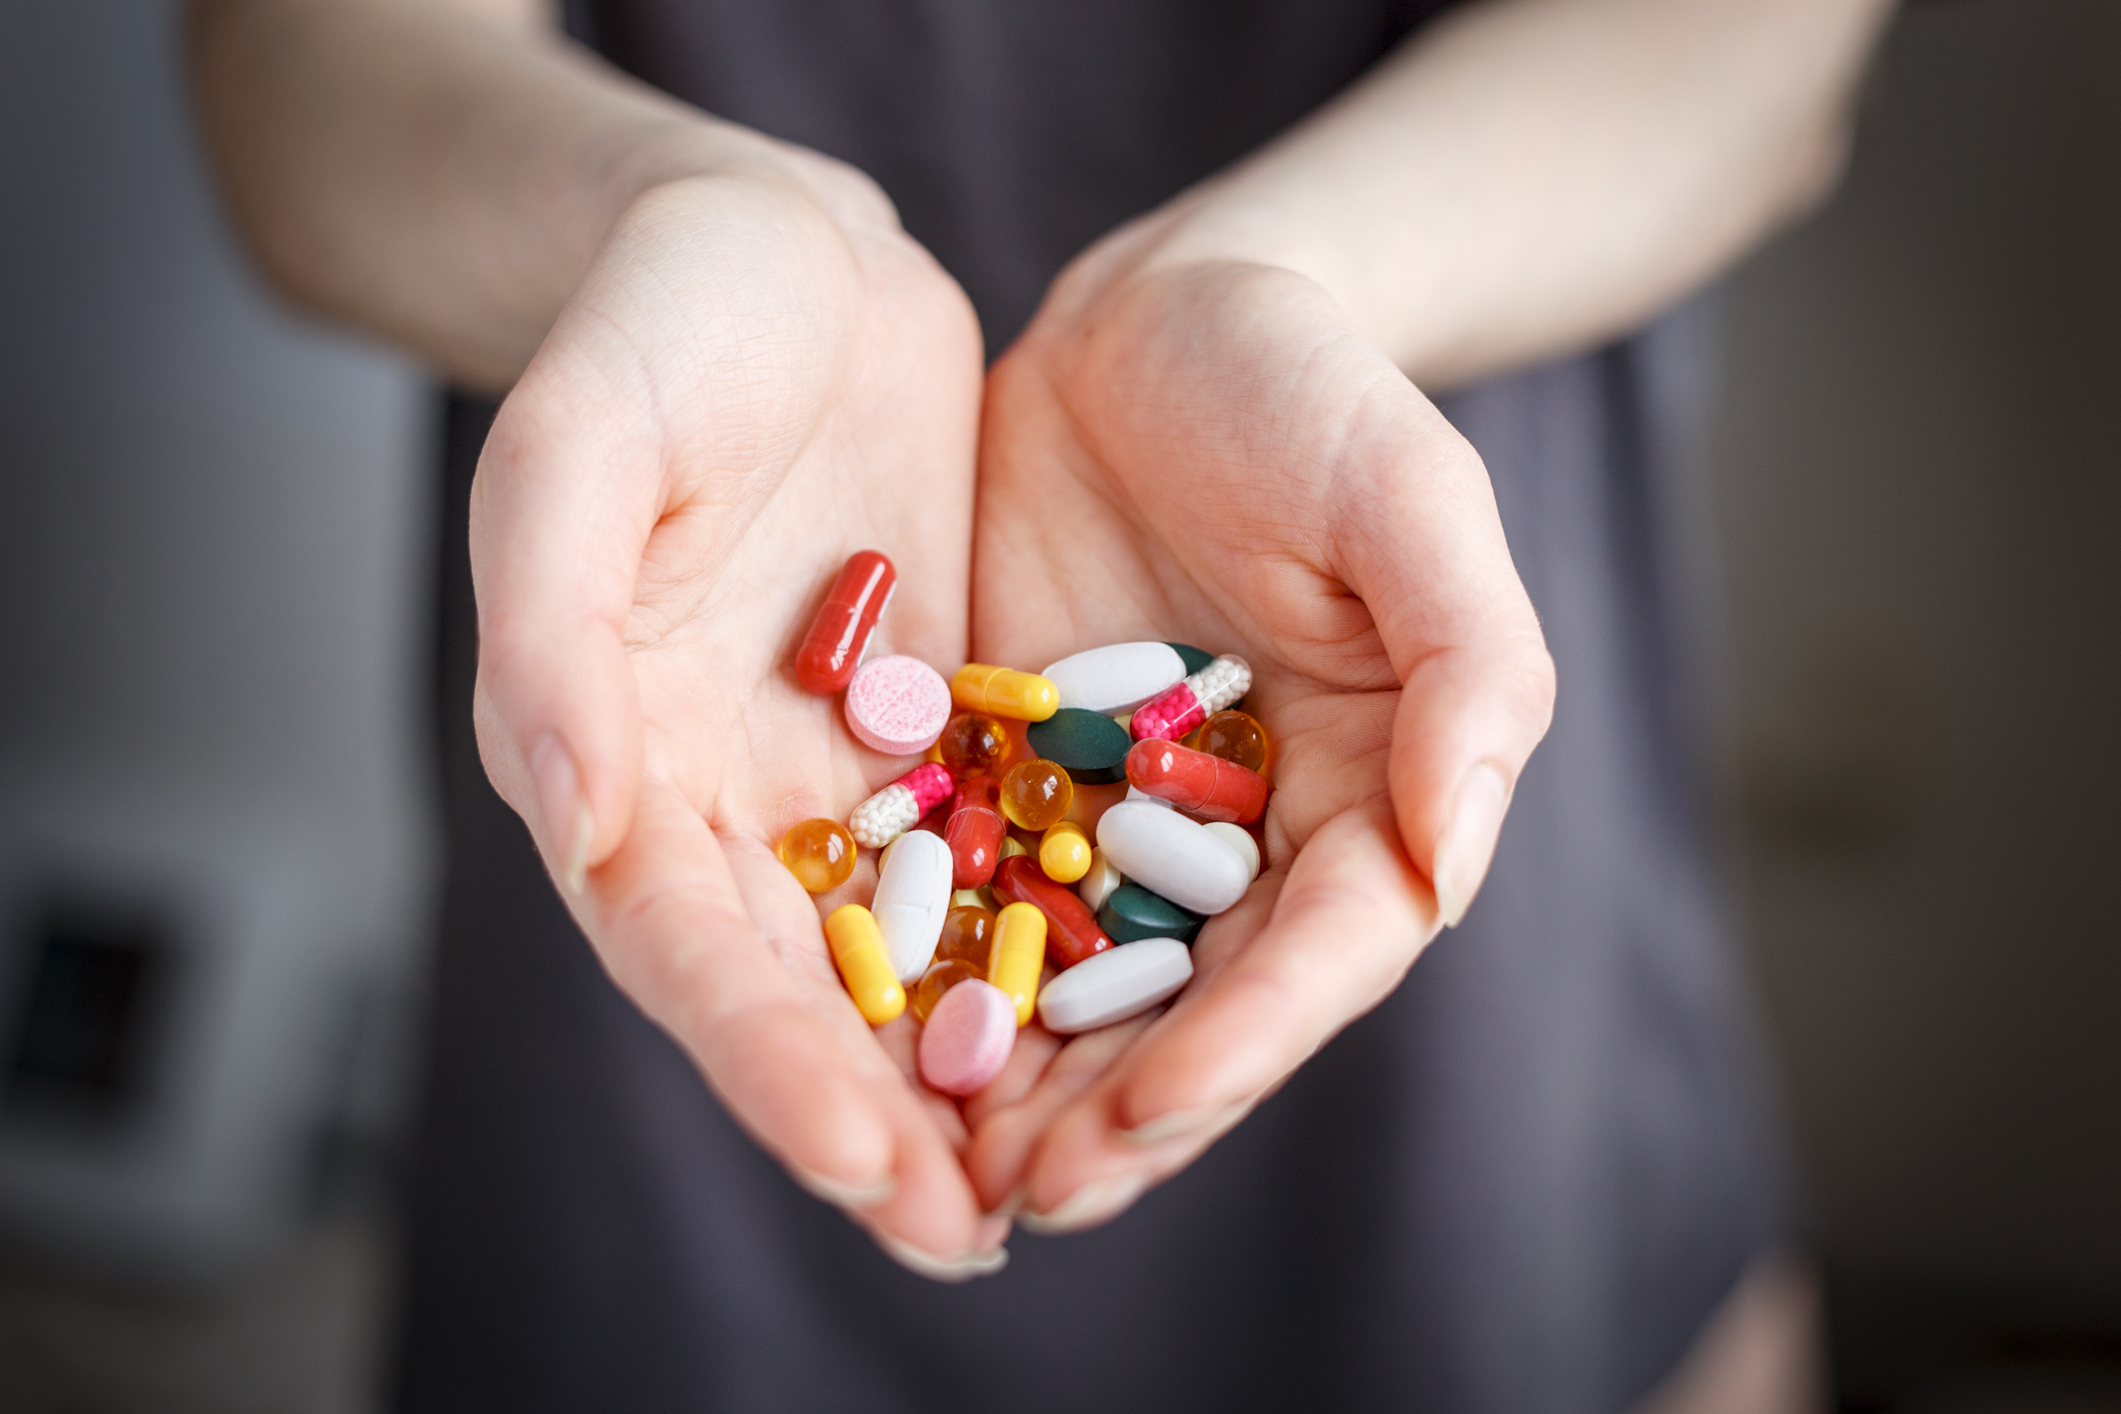 mitos y verdades sobre la vitamina d: ¿estamos abusando de los complementos?